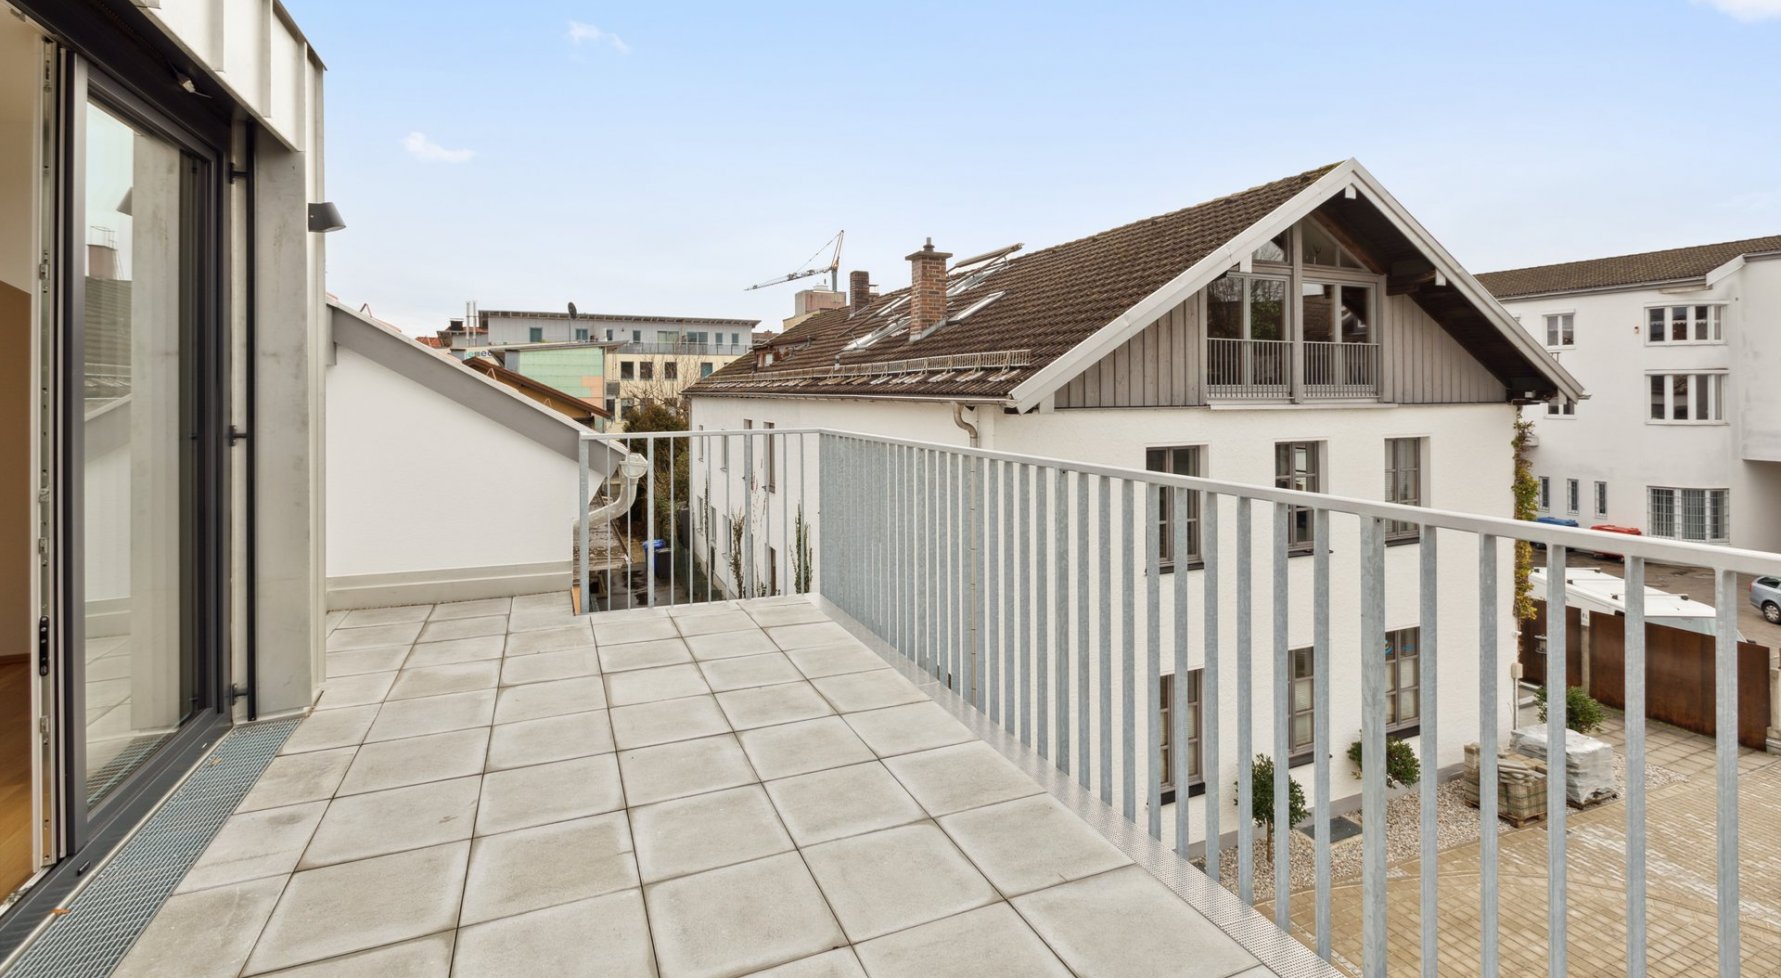 Immobilie in 83395 Freilassing, Bayern: Stylisch moderne Dachgeschoßwohnung - für alle die das Besondere suchen! - bild 1